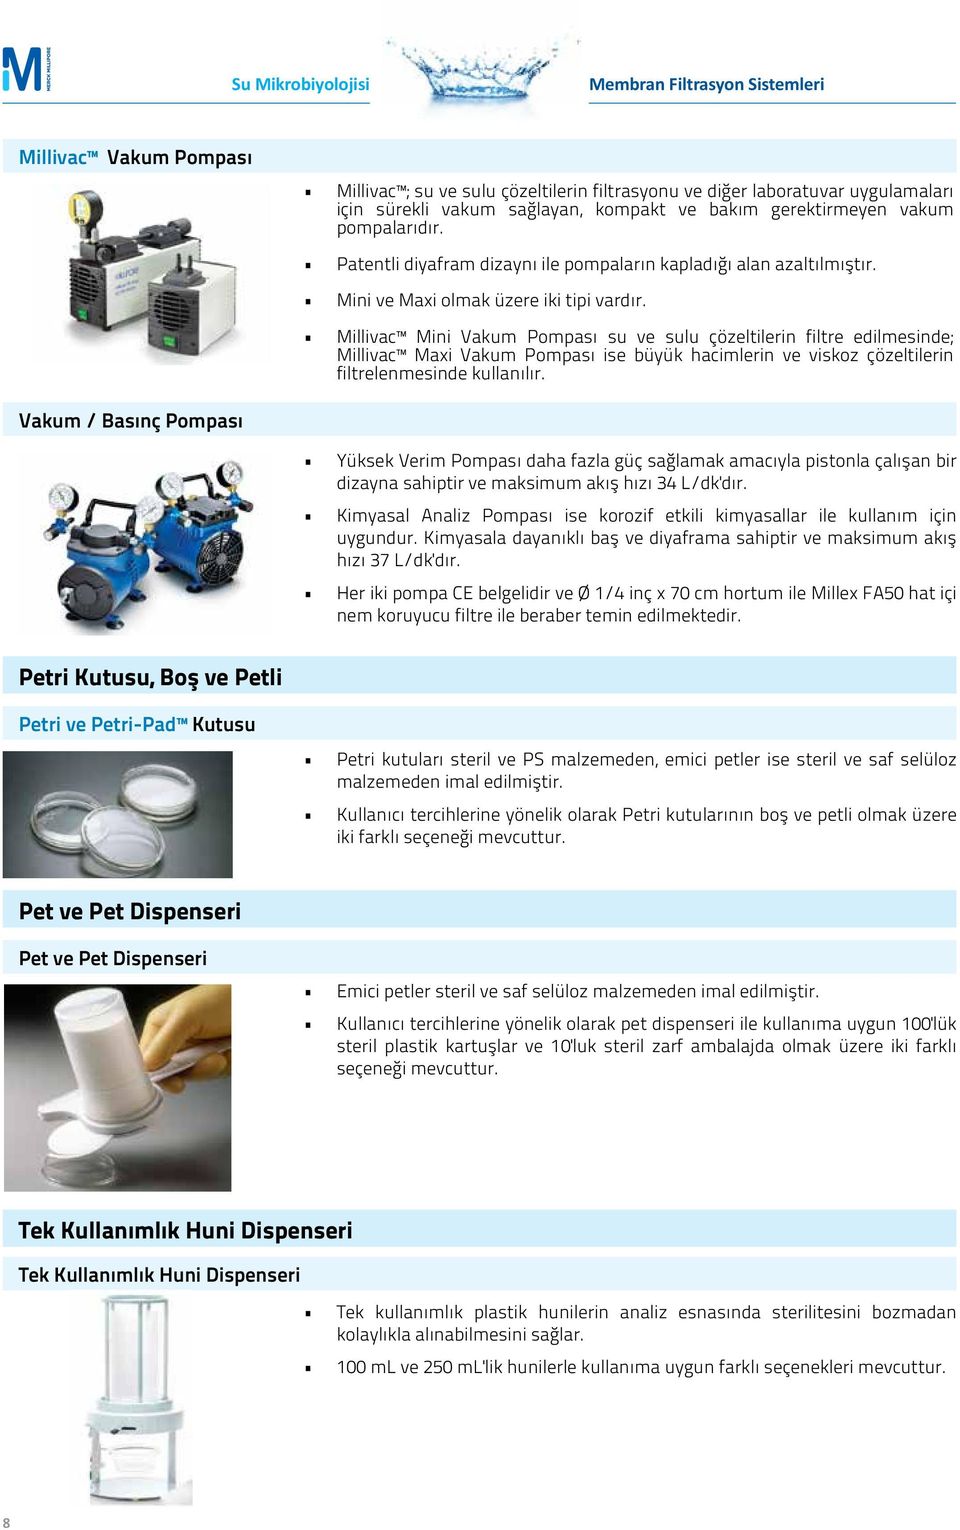 Millivac Mini Vakum Pompası su ve sulu çözeltilerin filtre edilmesinde; Millivac Maxi Vakum Pompası ise büyük hacimlerin ve viskoz çözeltilerin filtrelenmesinde kullanılır.